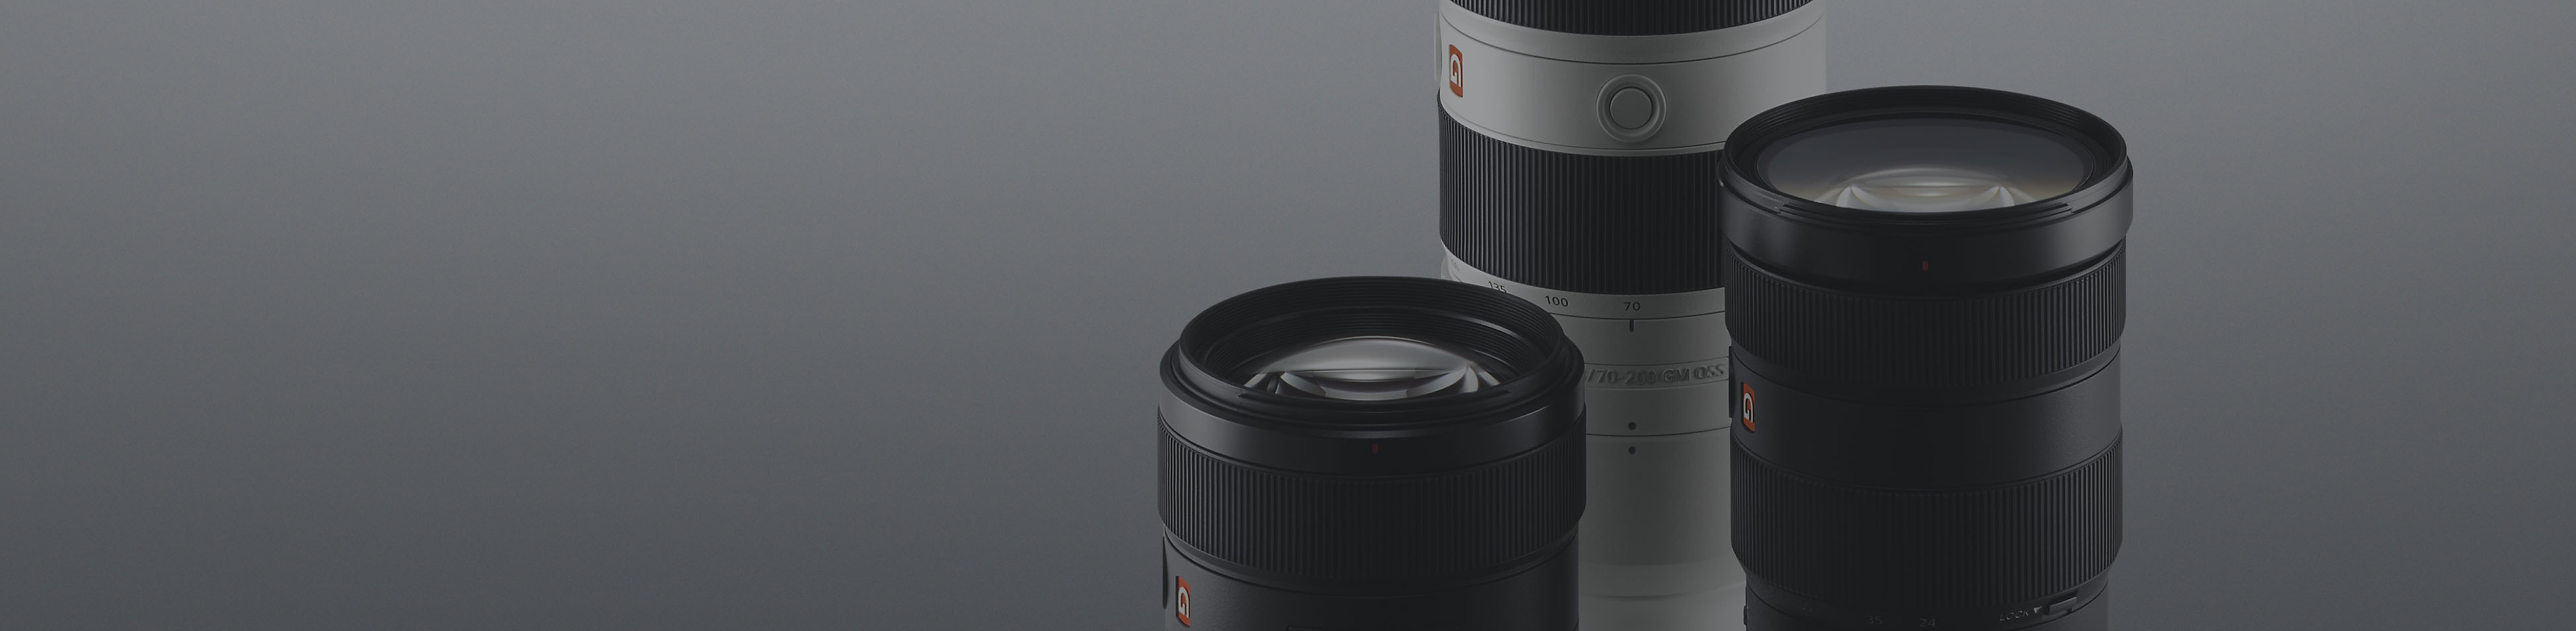 Drei schwarz-weiße α-Objektive von Sony vor einem grauen Hintergrund